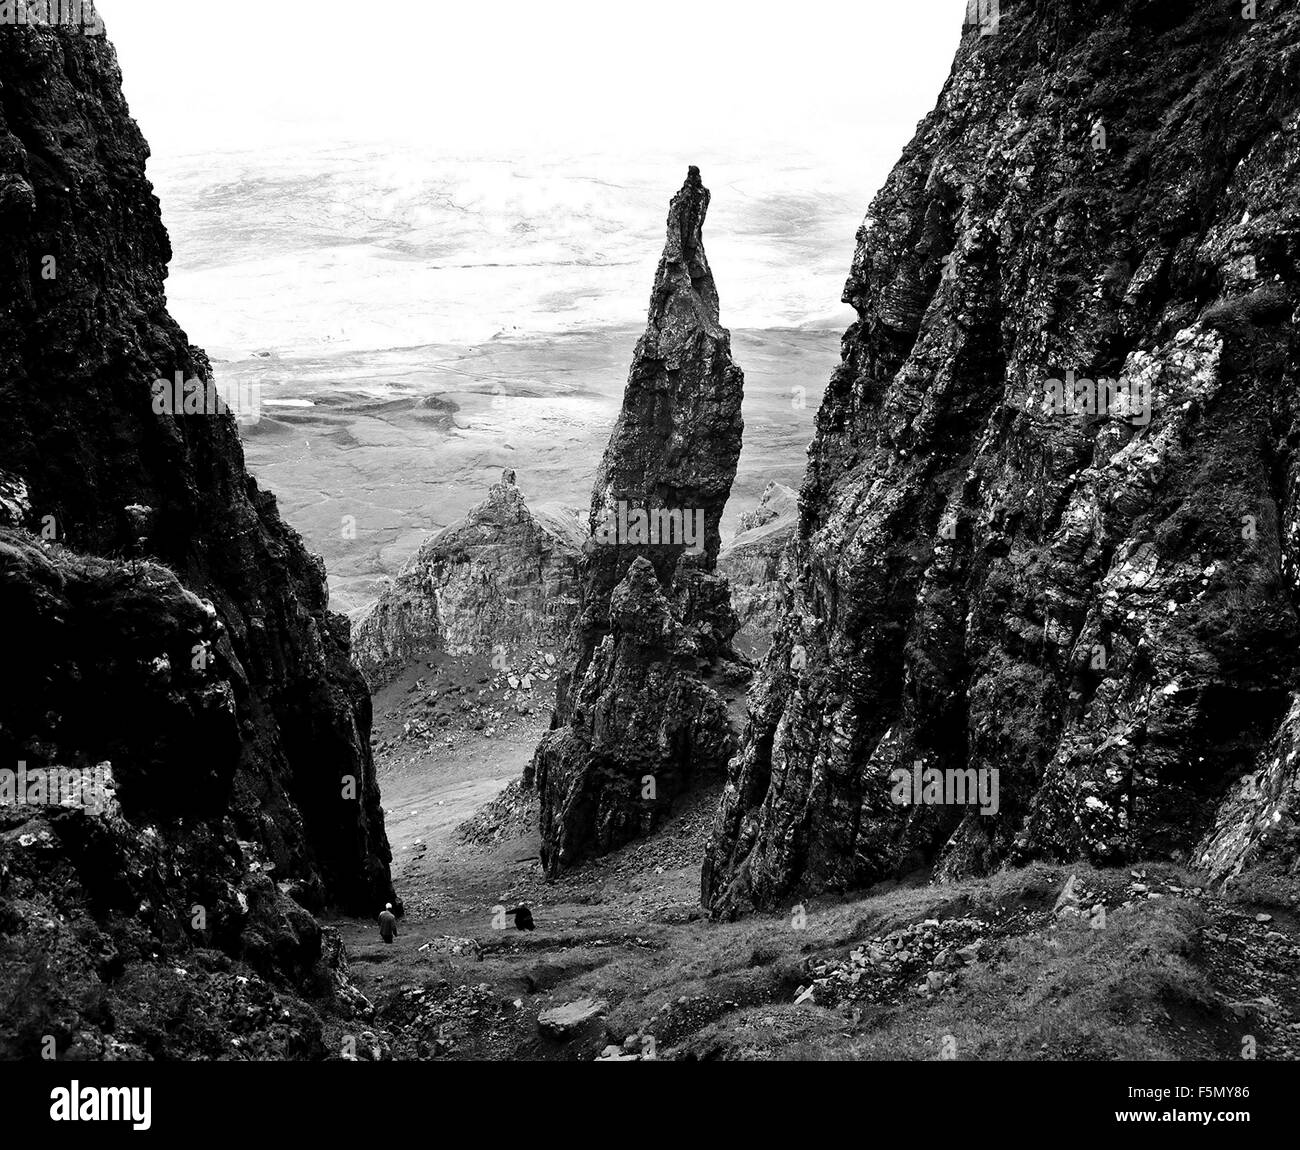 14 Nov, 2005; Skye, Escocia; la formación rocosa Quirang. Los deslaves en la Quirang es el mayor movimiento de masas deslizar en Gran Bretaña, extendiéndose a lo largo de 2km de ancho ( cerca del viejo hombre de Stor). La Isla de Skye, normalmente conocido simplemente como Skye (An t-Eilean Sgitheanach en gaélico escocés) es la isla más grande y más al norte en el interior de las Islas Hébridas de Escocia. Skye es la segunda isla más grande de Escocia, después de Lewis y Harris. La isla tiene algunas de las más dramáticas y difíciles terrenos montañosos en Escocia, incluidas las Cuillin, así como una rica herencia de antiguos monumentos, castillos y Foto de stock